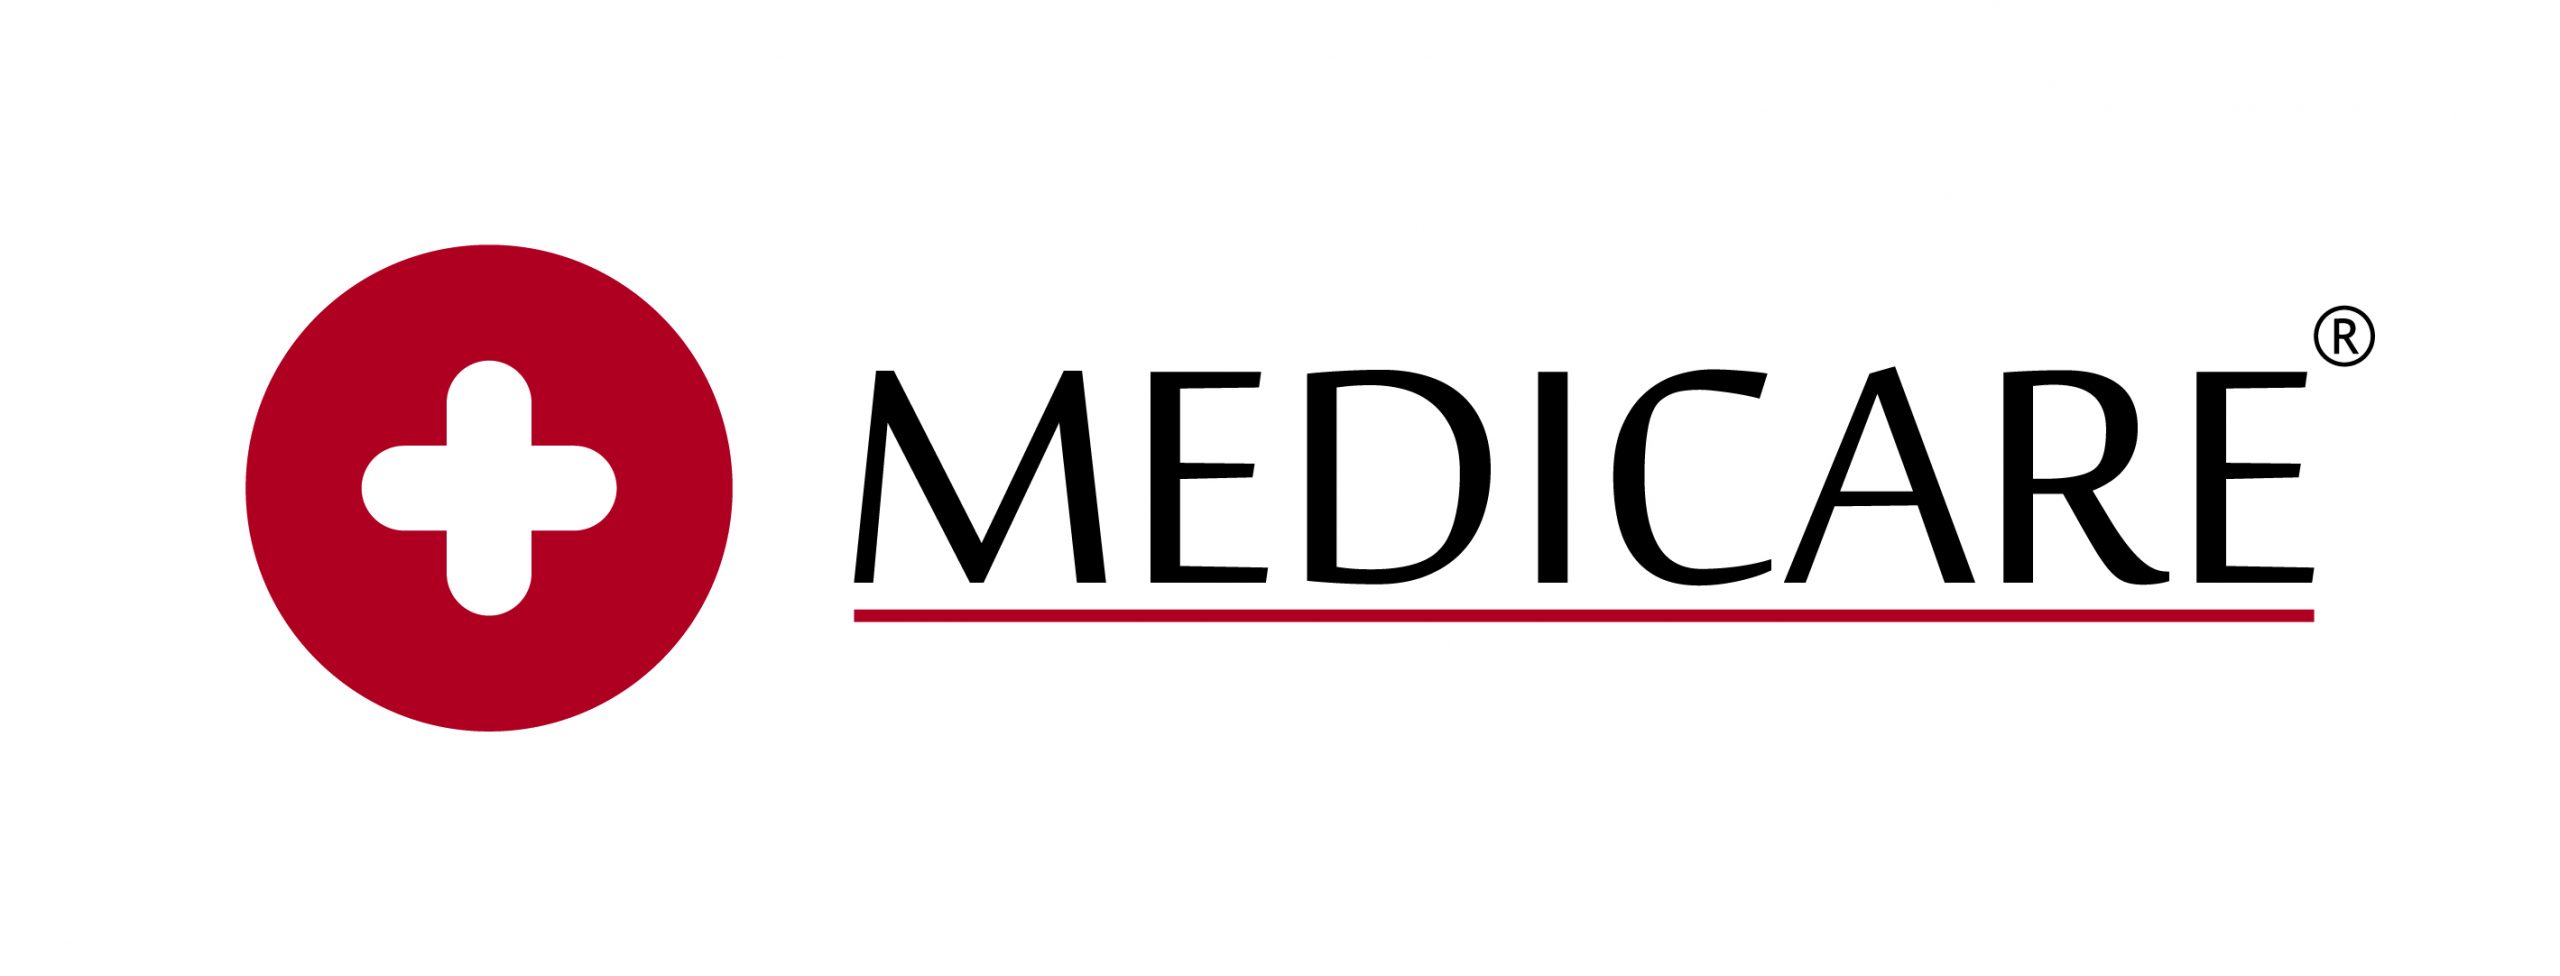 Logo Medicare atualizado - Marcela Almeida Alves